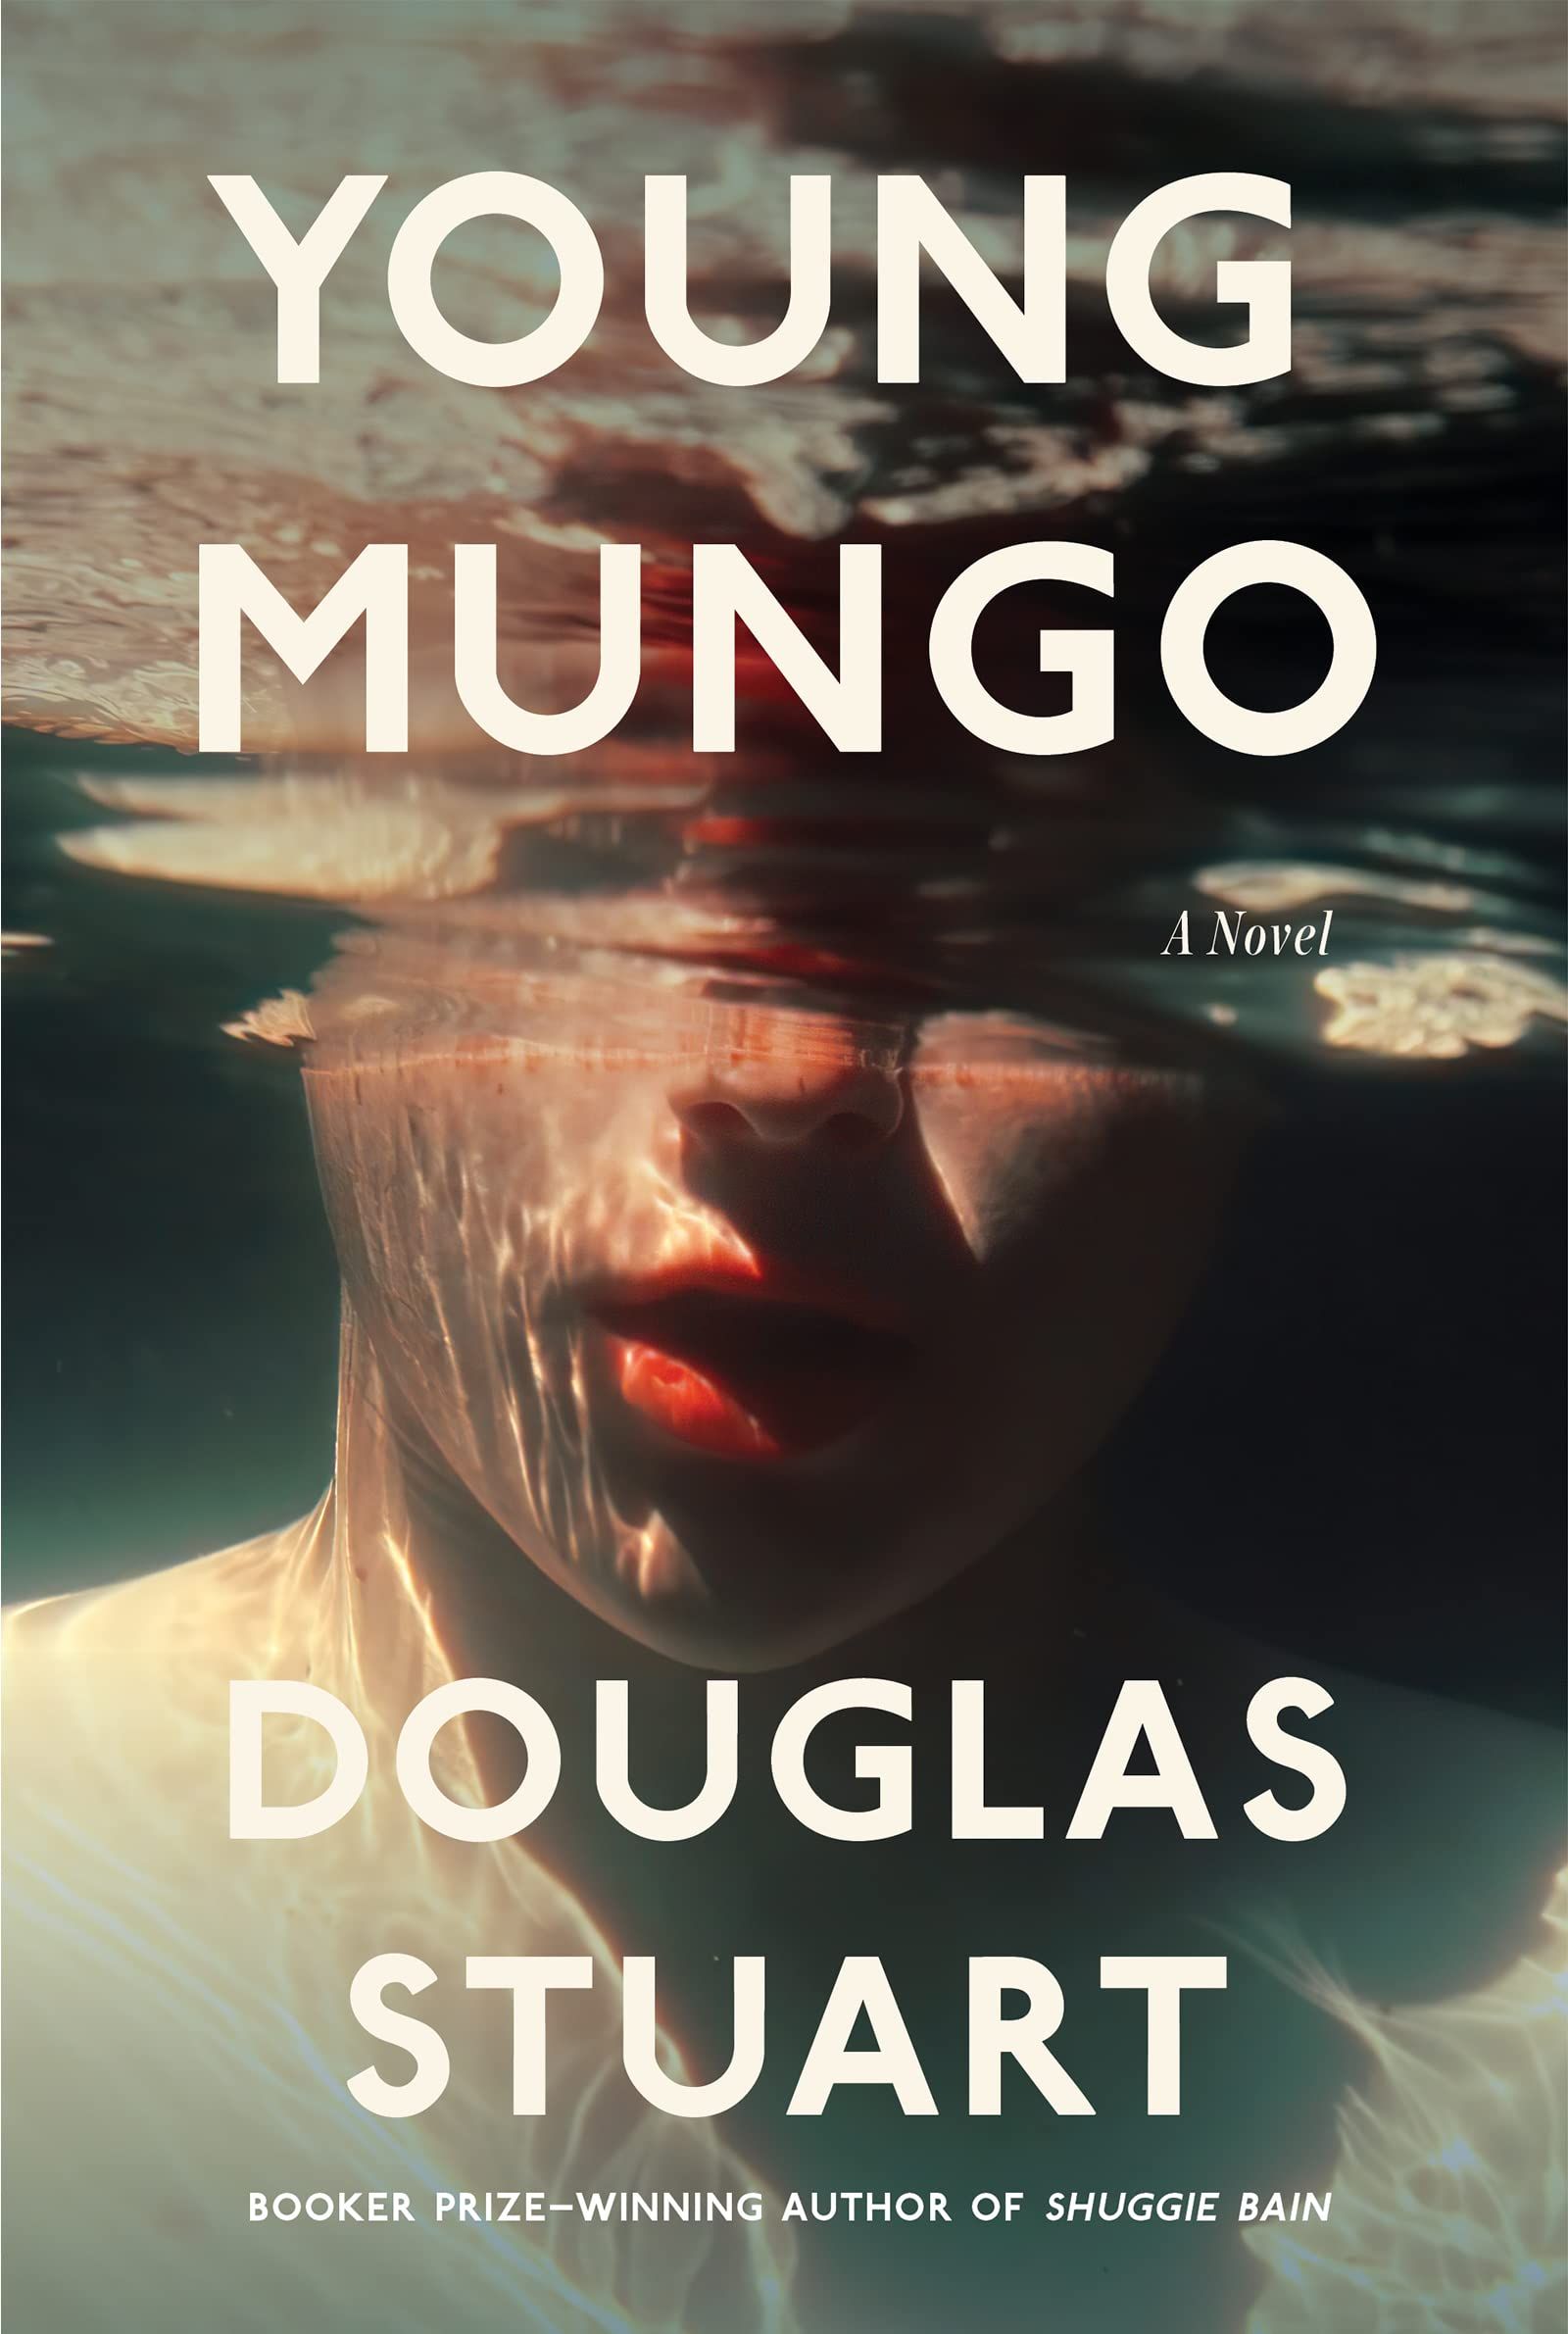 Young Mungo by Douglas Stuart cover